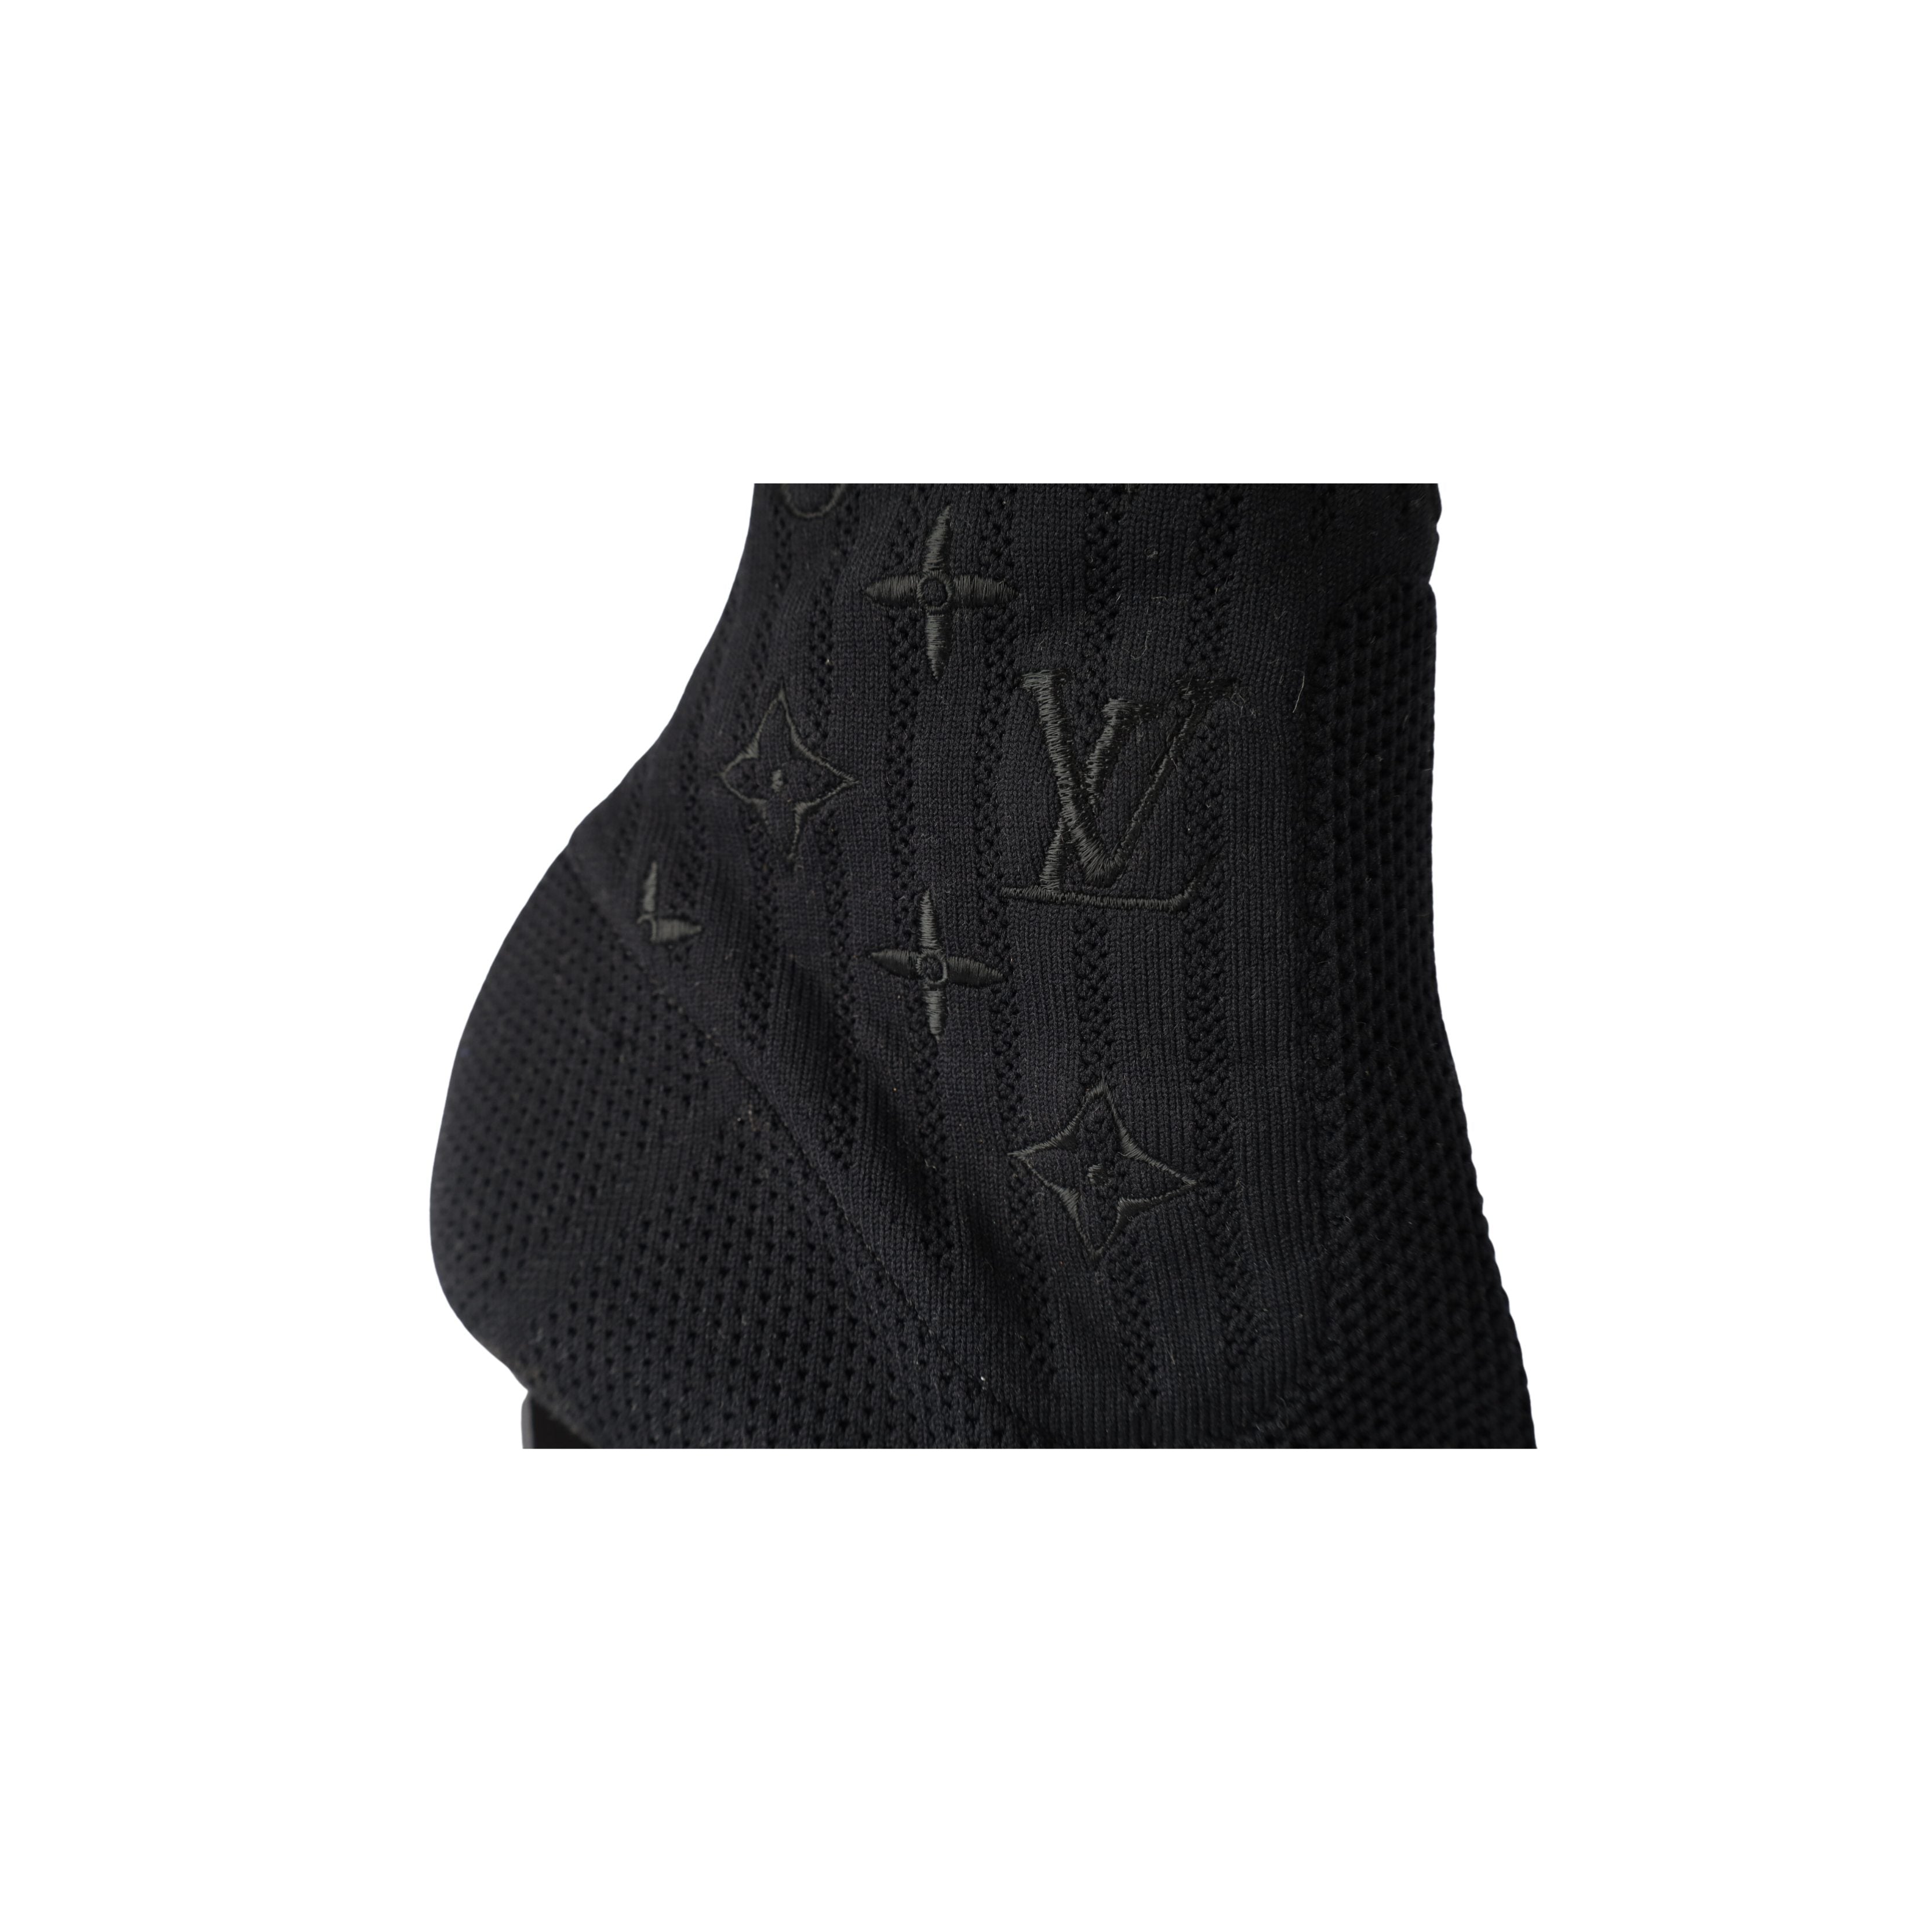 Authentic Louis Vuitton Silhouette Black Fabric LV Logo Sock Boots EU 39 US  9